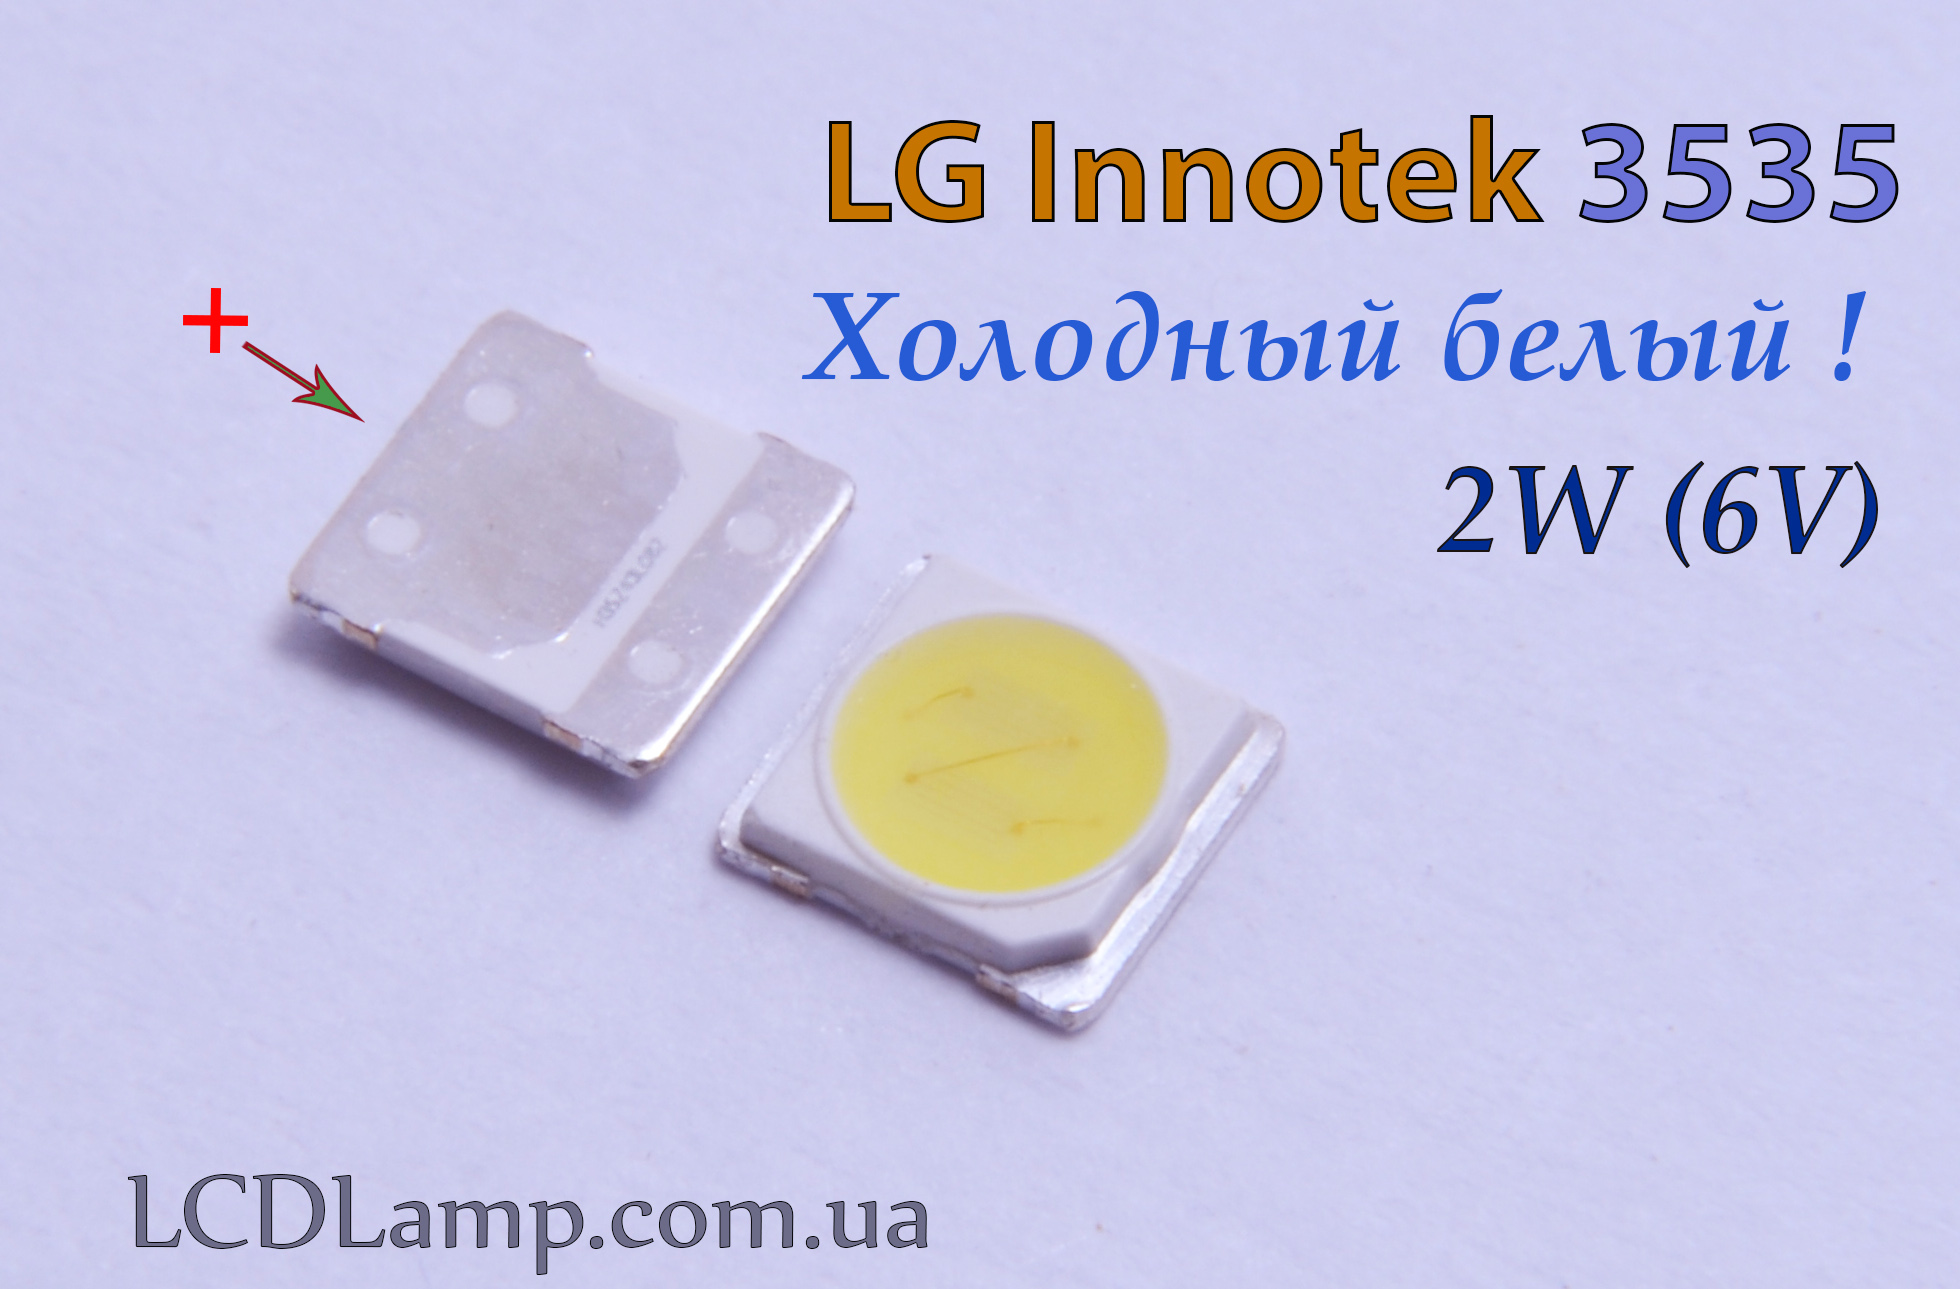 LG innotek 3535 2 W.6V. Холодный